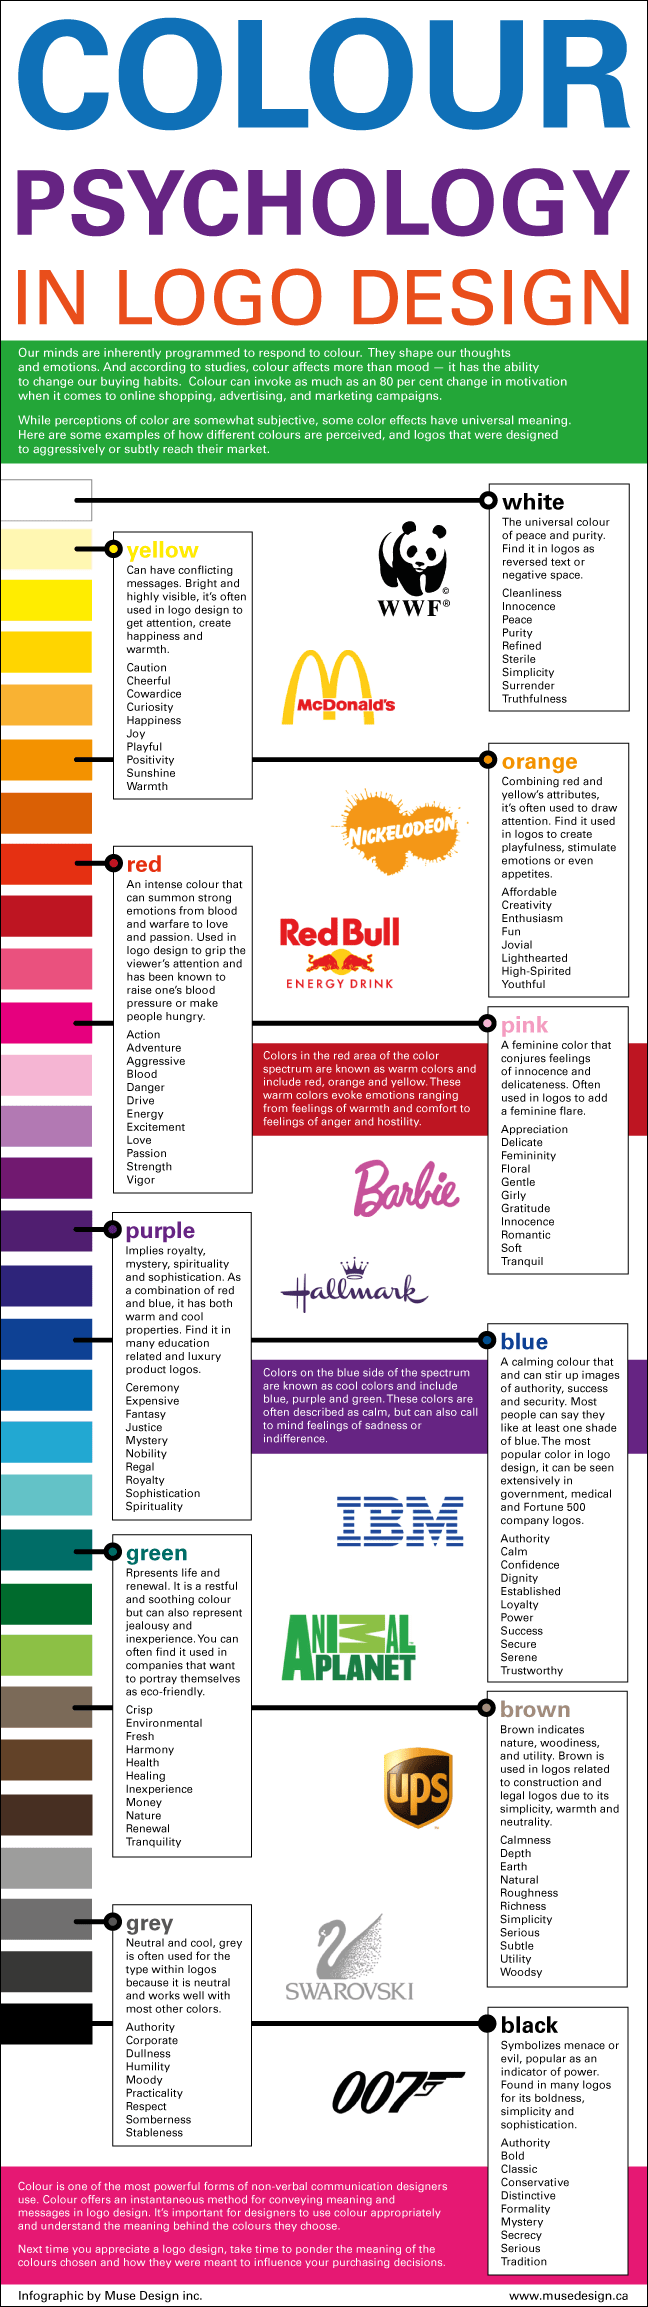 la psilogia del color de las marcas